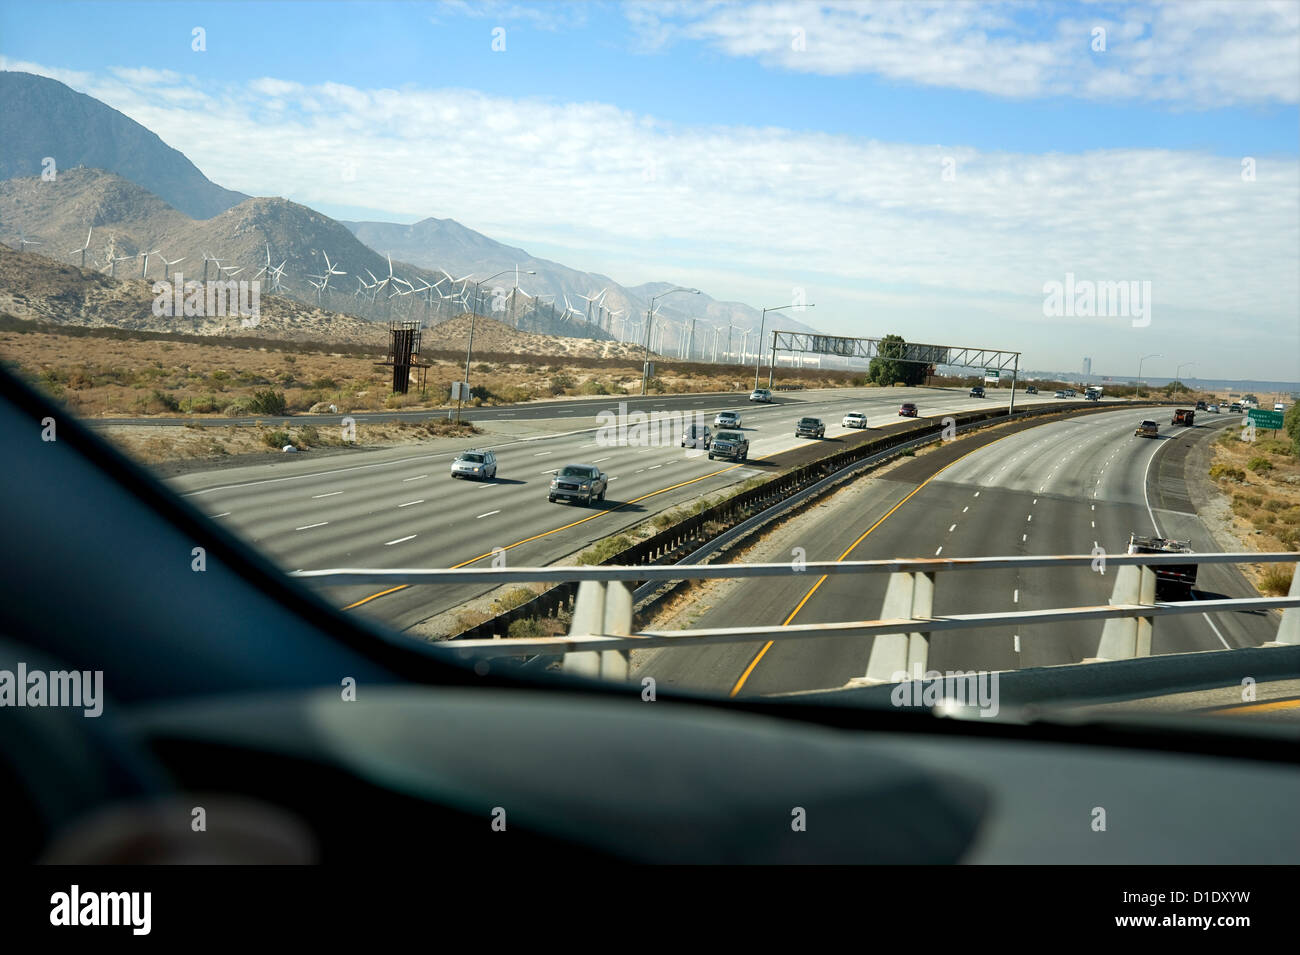 Vista del desierto carretera con tráfico desde el parabrisas del coche en movimiento Foto de stock